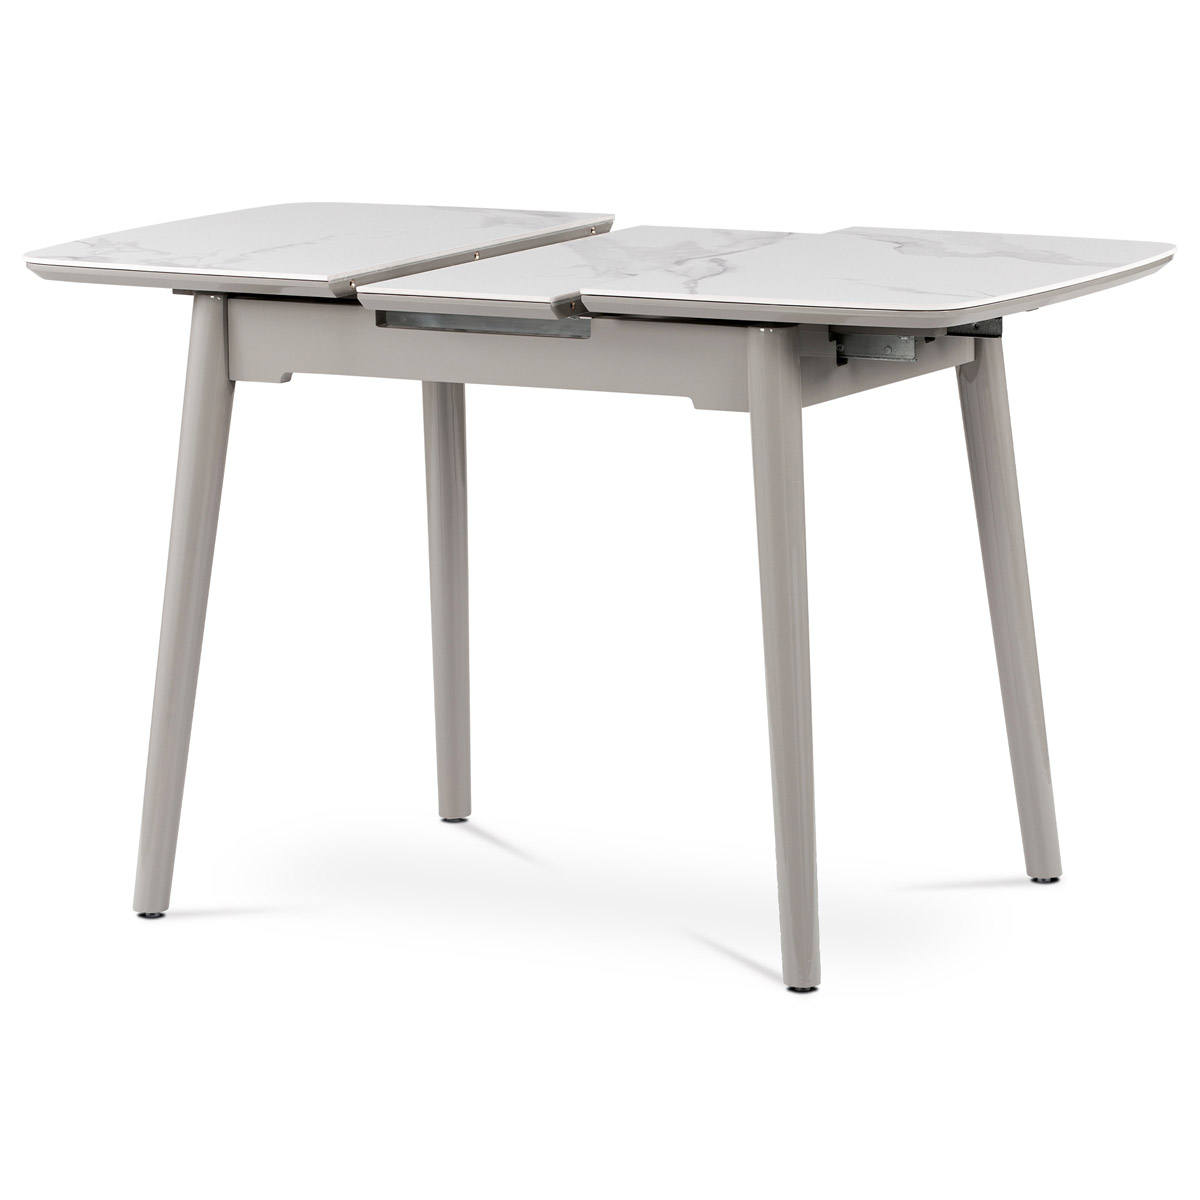 Jídelní stůl HT-401M WT 110+30x75 cm, keramická deska bílý mramor, masiv, šedý vysoký lesk